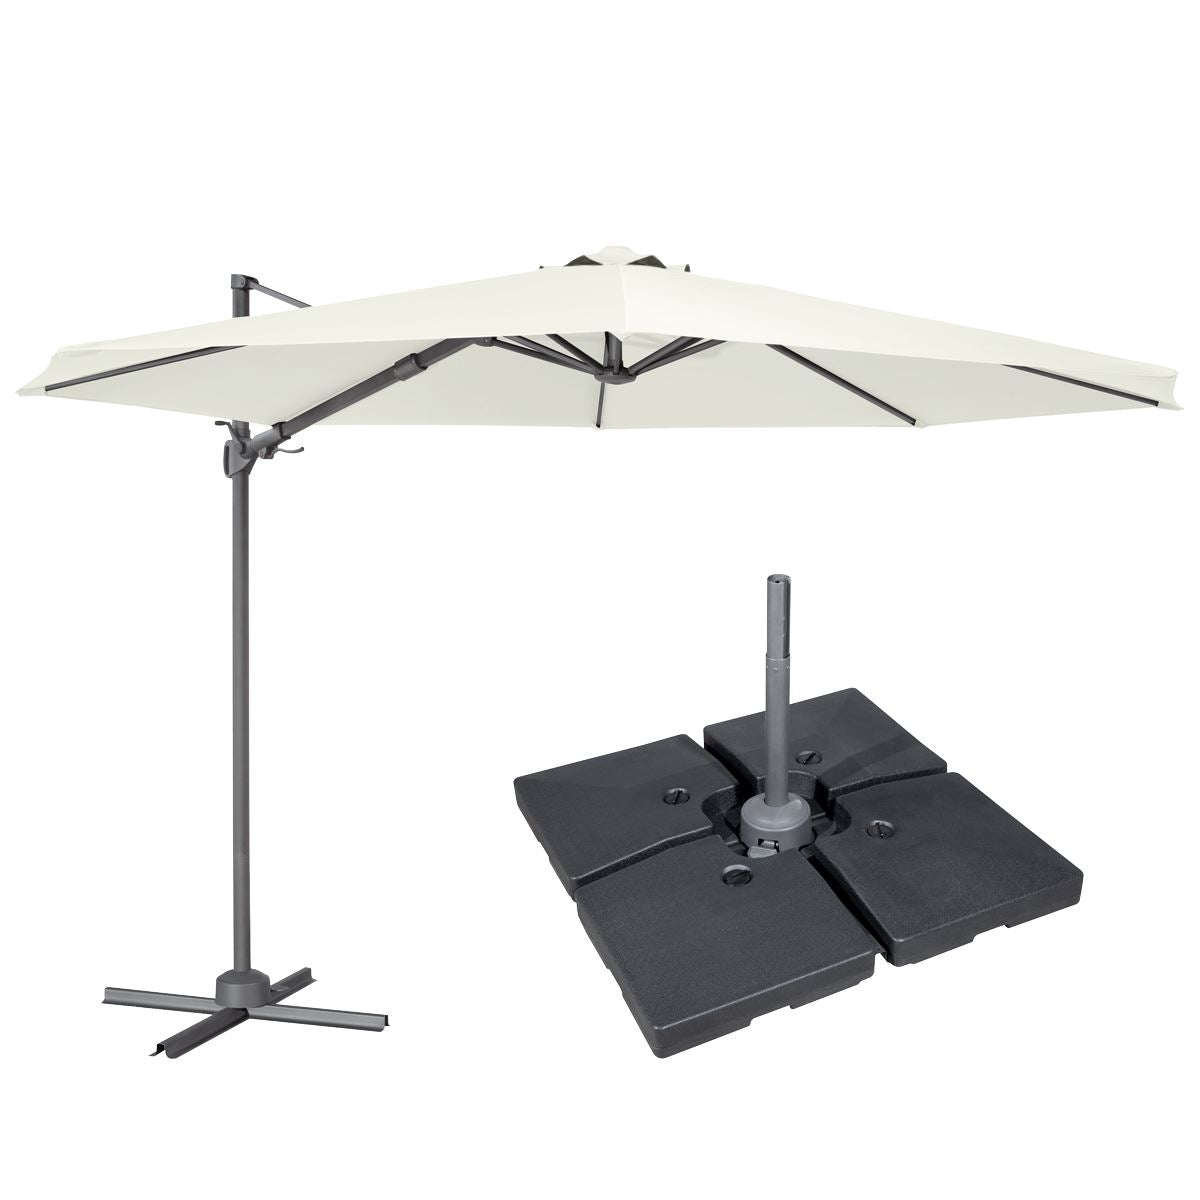 Dellonda Ø3m Cantilever Parasol/Umbrella, Cover and Base Bundle, 8 Rib, Crank Handle, 360° Rotation, 60° Tilt, Cream Canopy